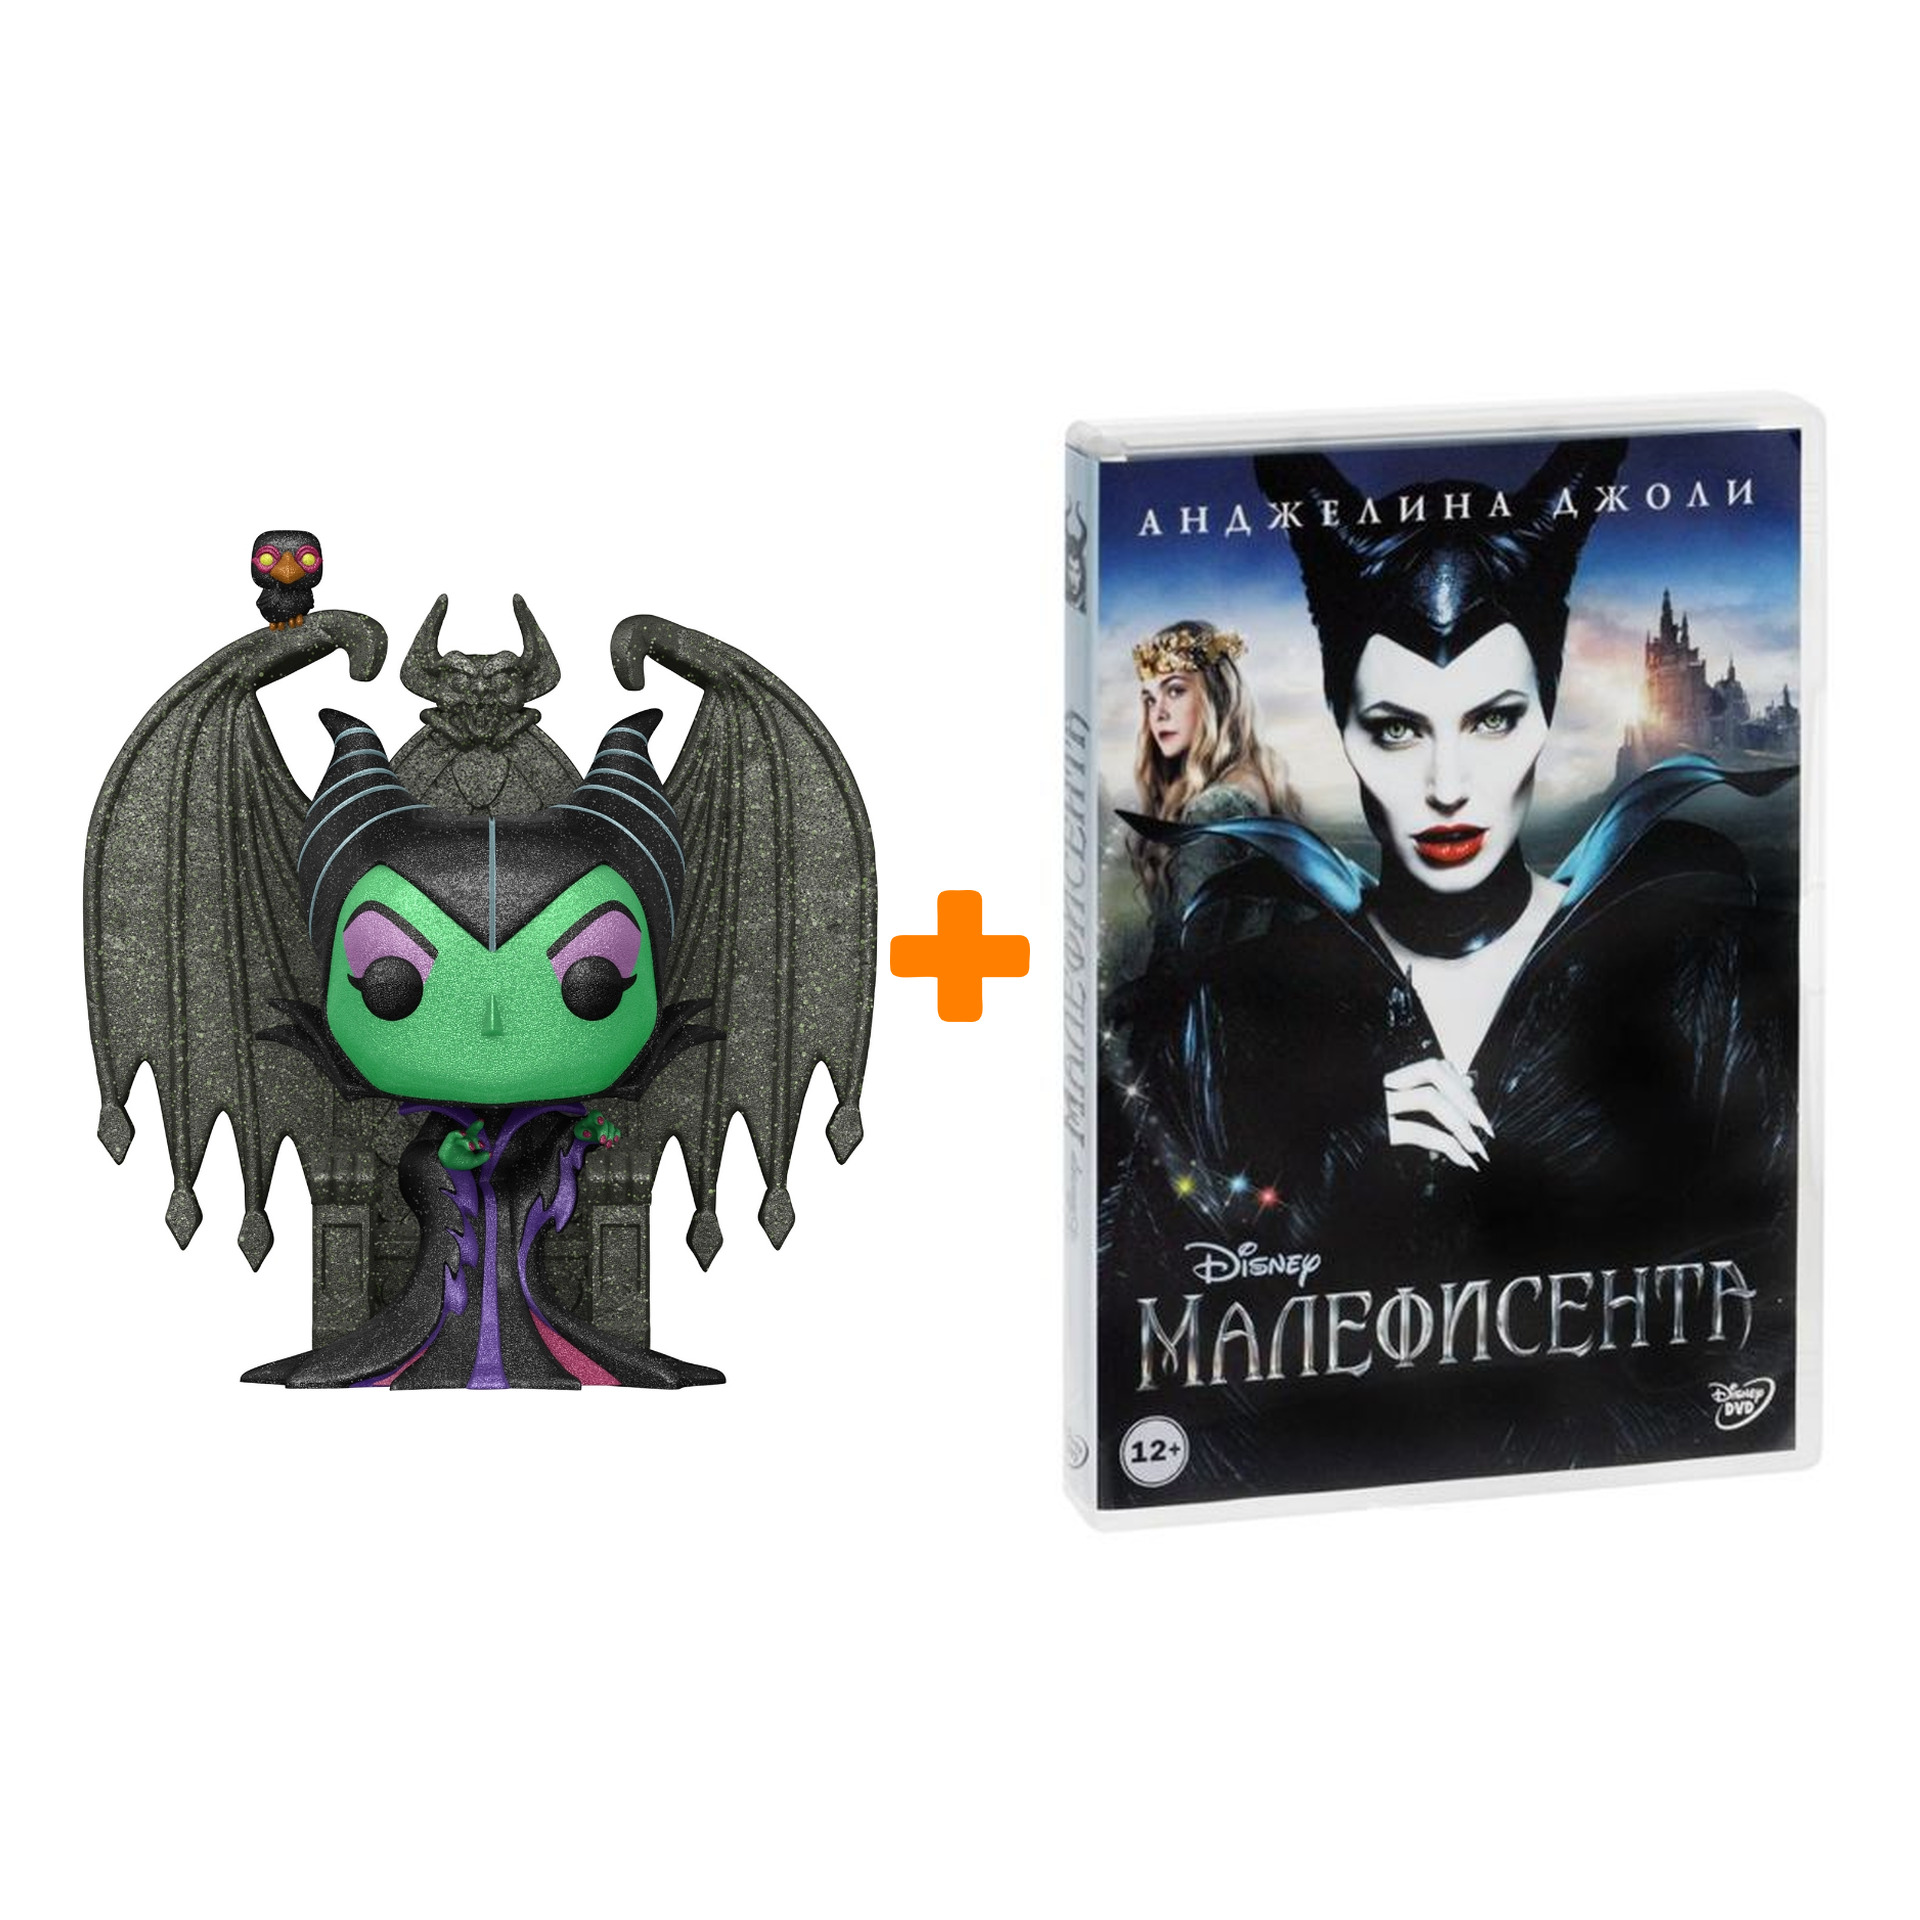 Набор фигурка Disney Villains Maleficent + Малефисента (региональное издание) (DVD) фотографии